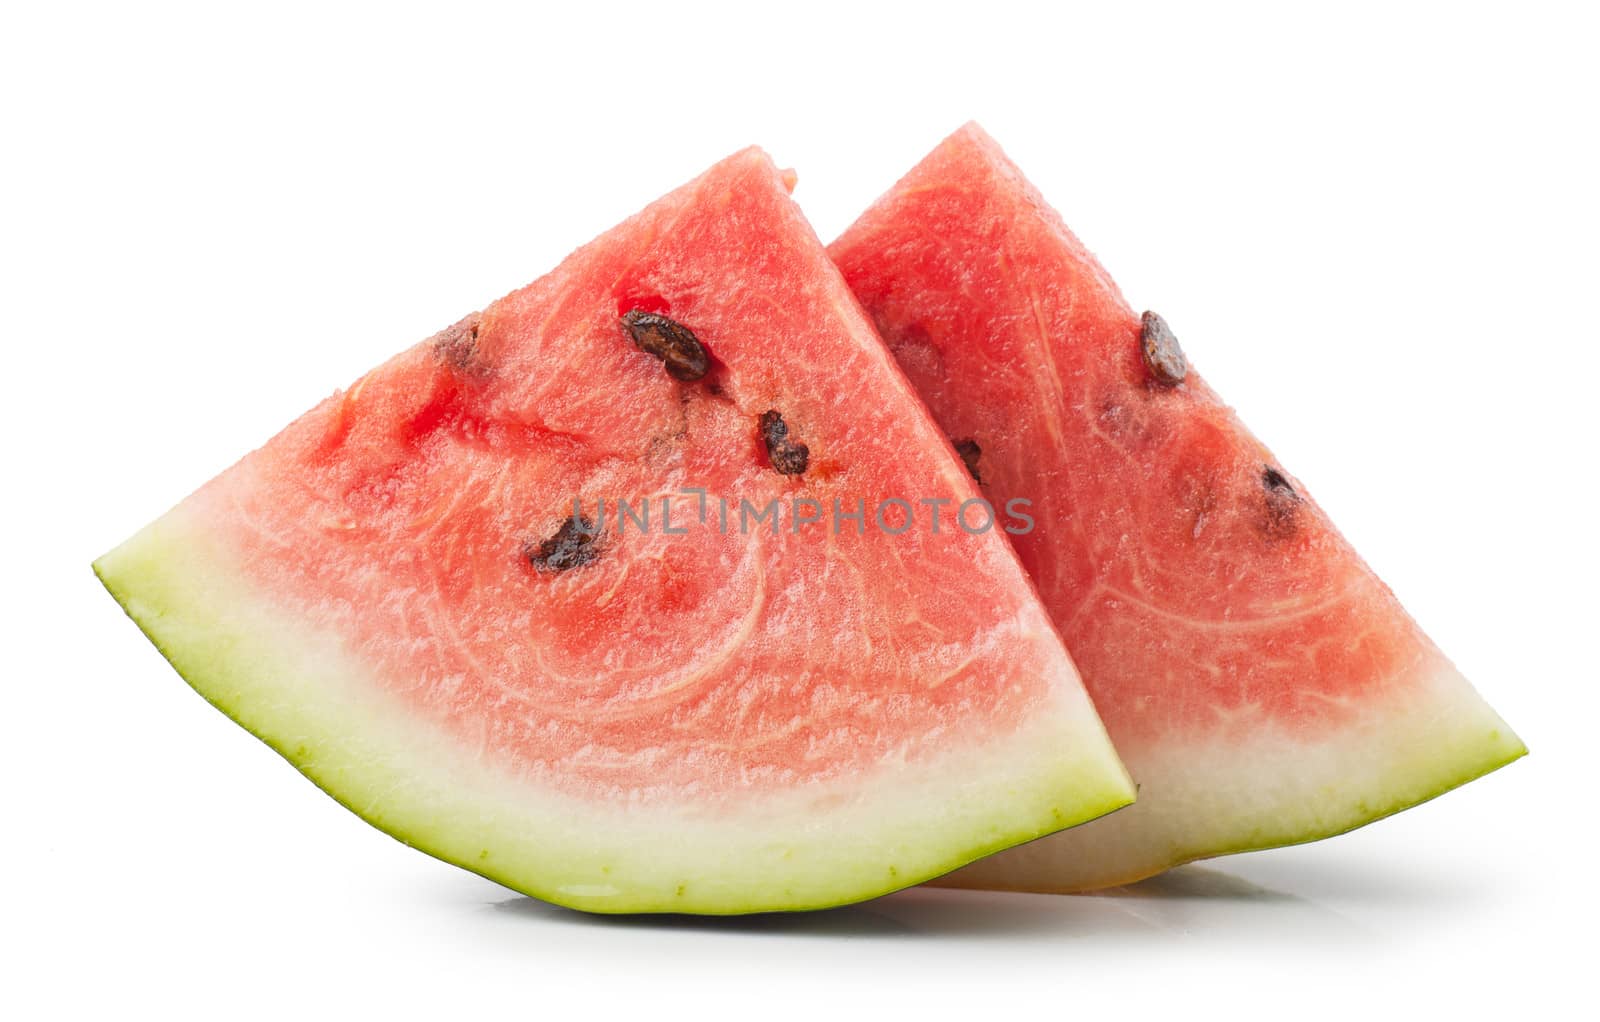 Watermelon by AGorohov